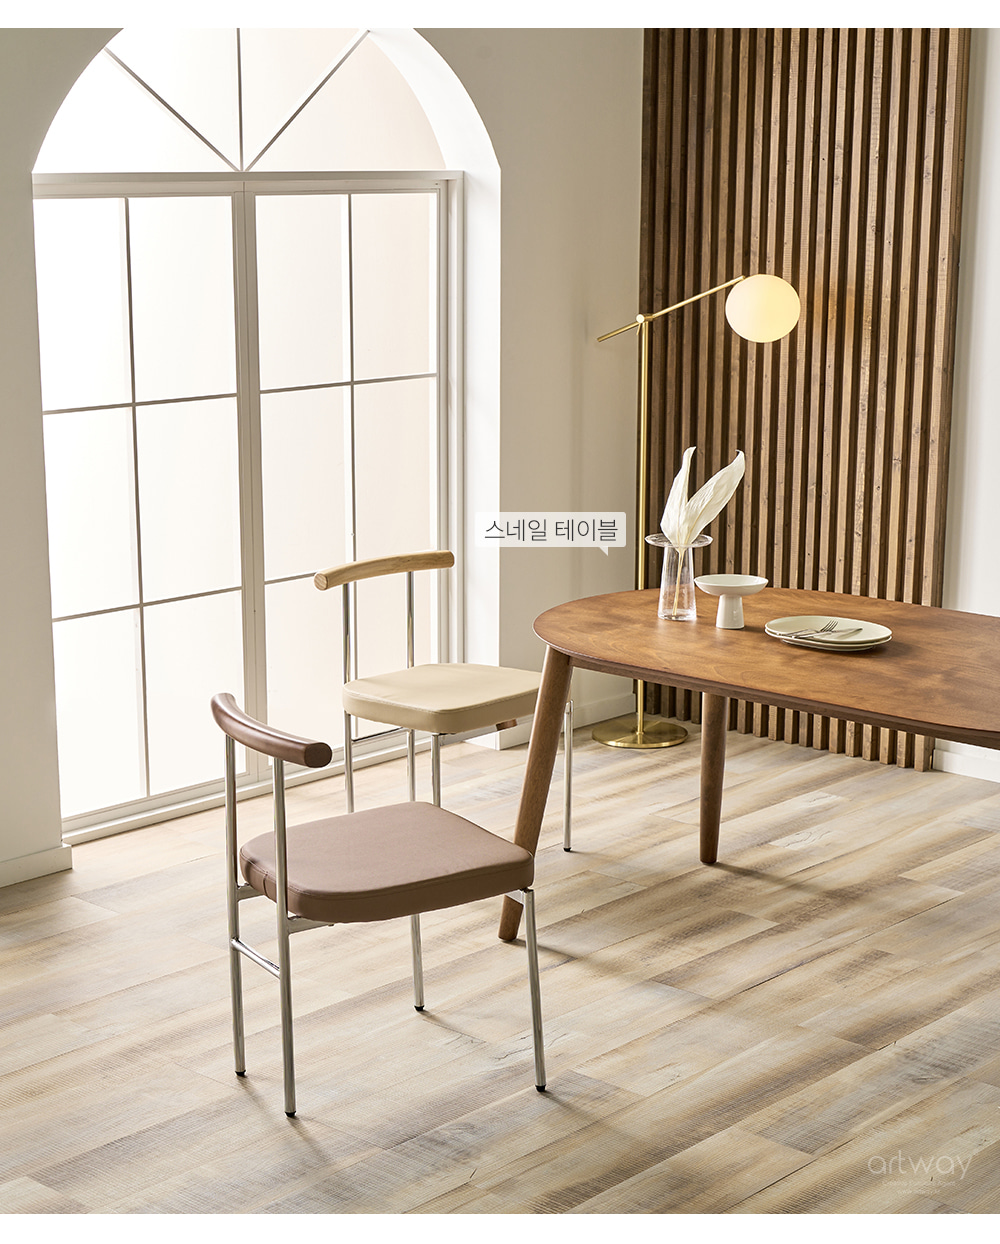 피카소가구 아트웨이【레토체어】 컨셉이미지 / 키워드 : 철재의자, 디자인의자, 가죽의자, 인테리어의자, 카페의자, 식탁의자 